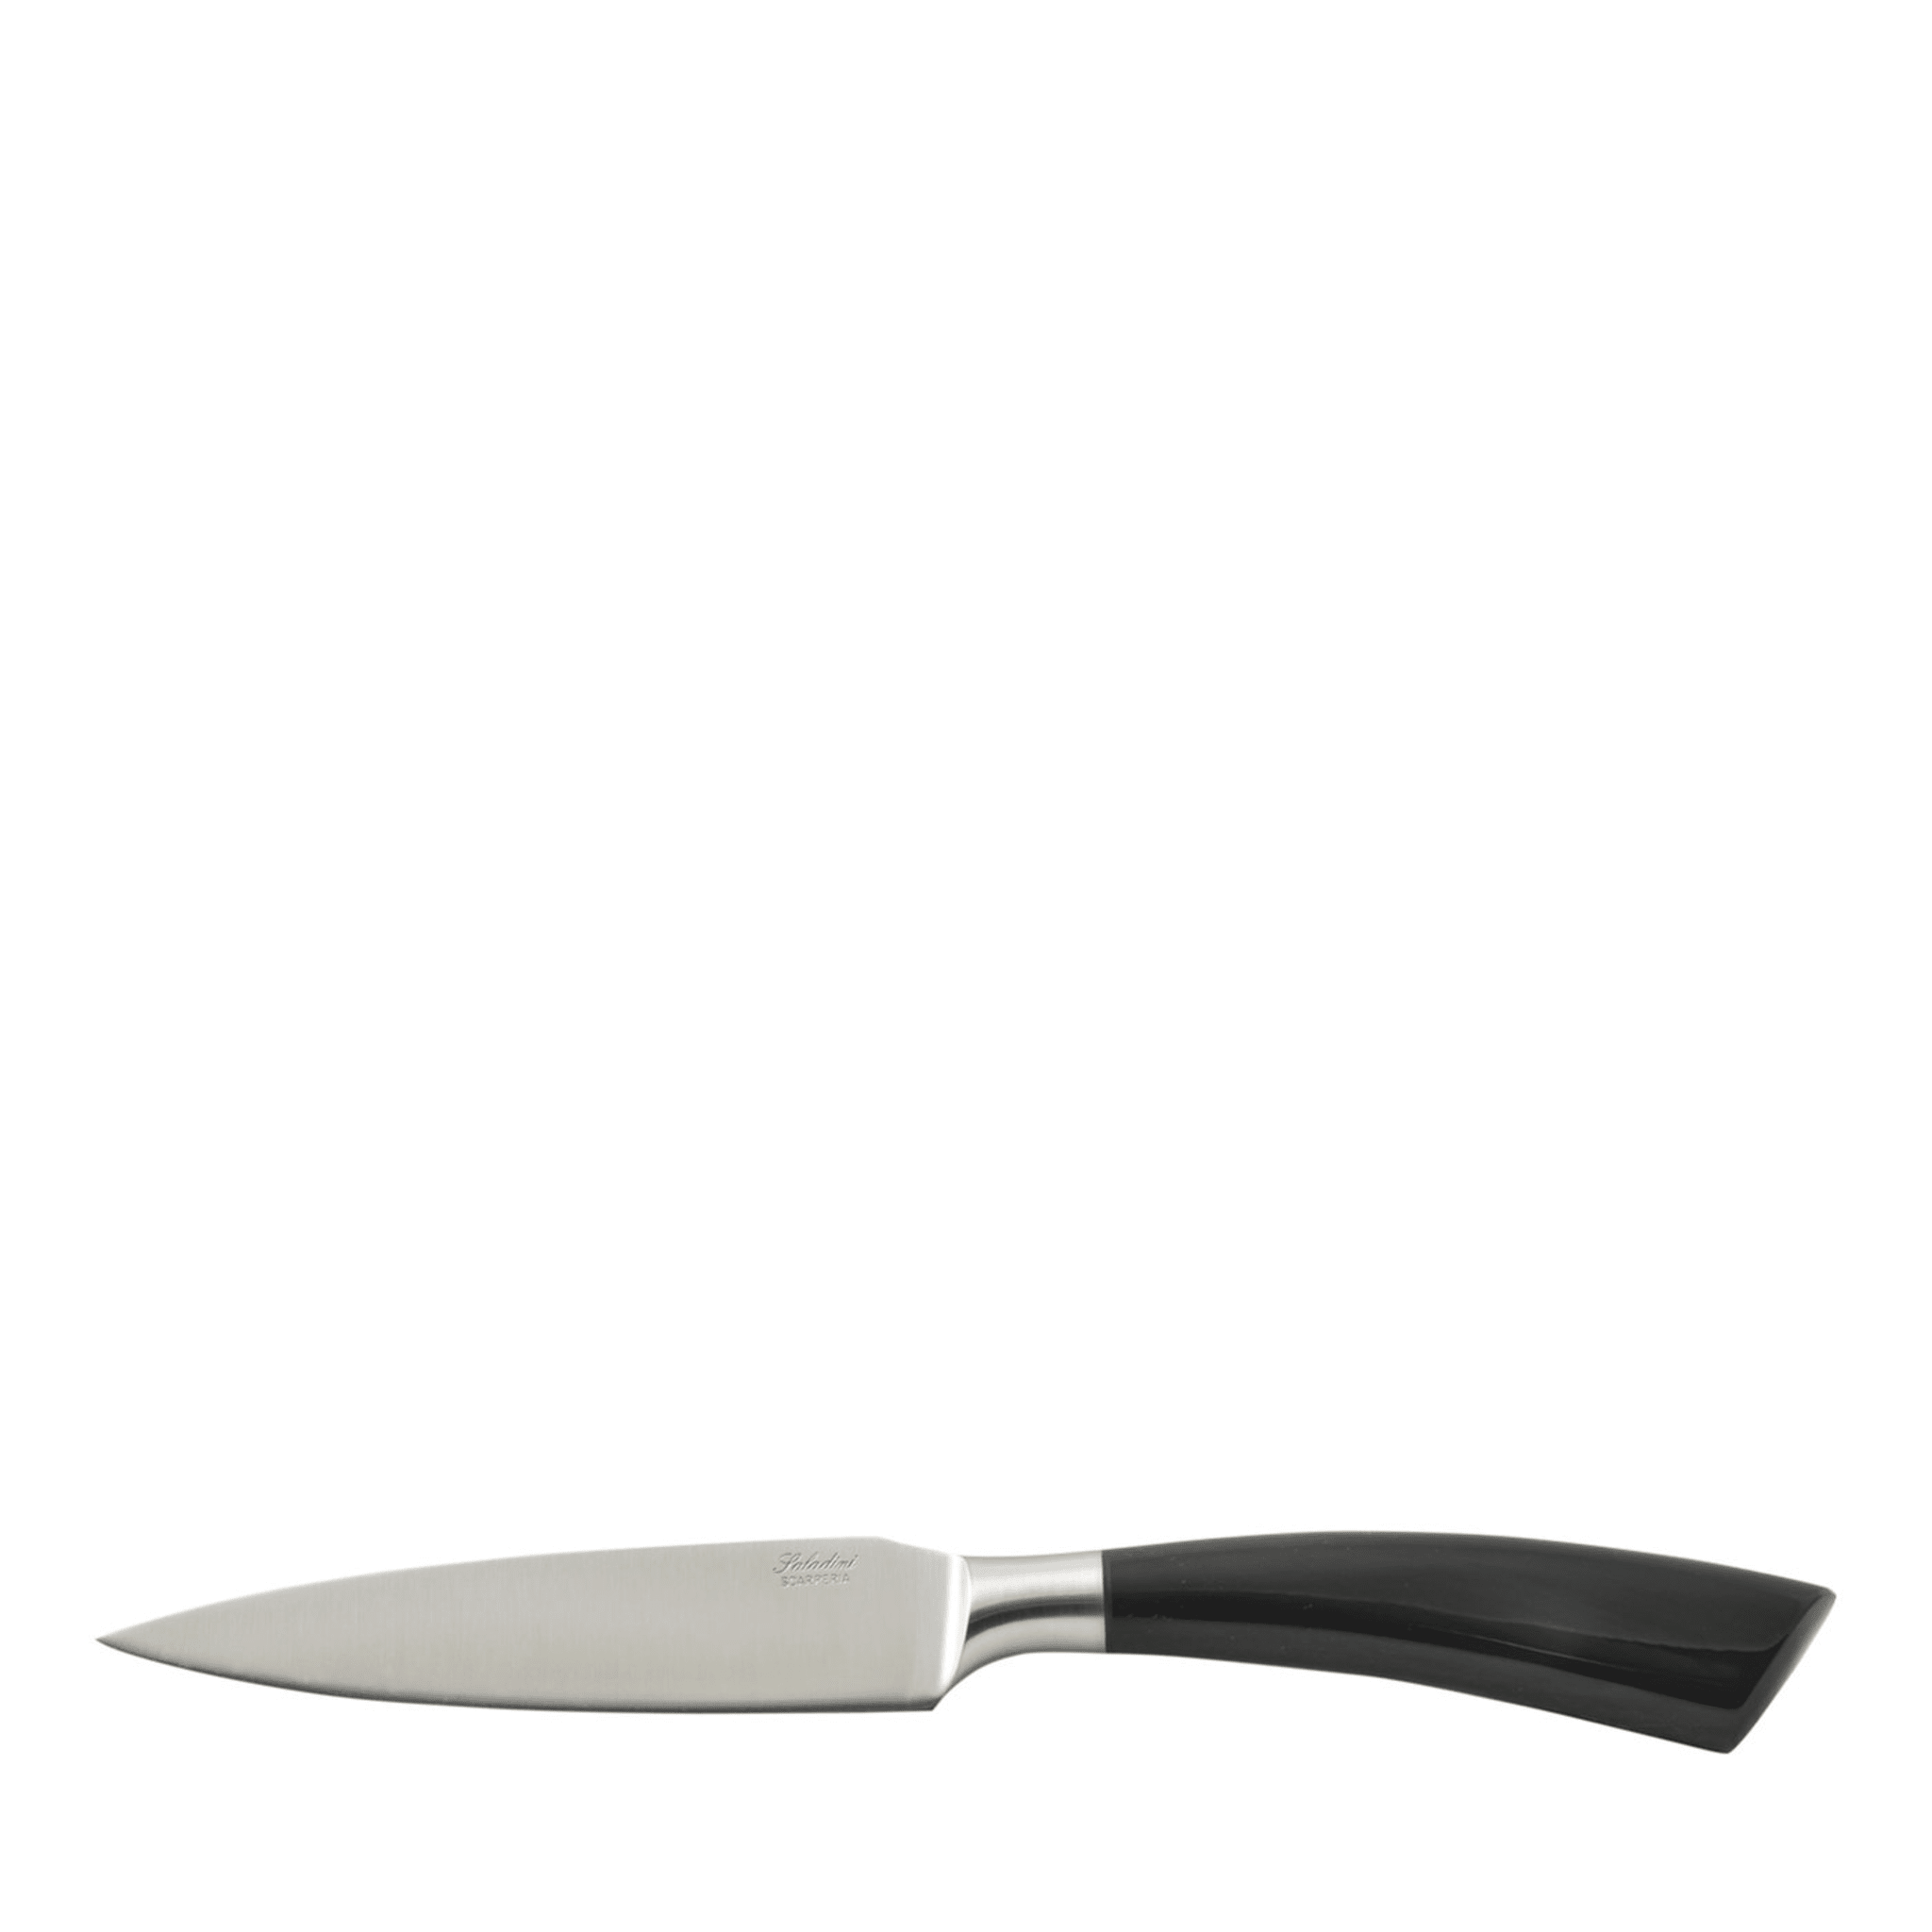 Juego de seis cuchillos para carne Dark Rustico - Vista principal